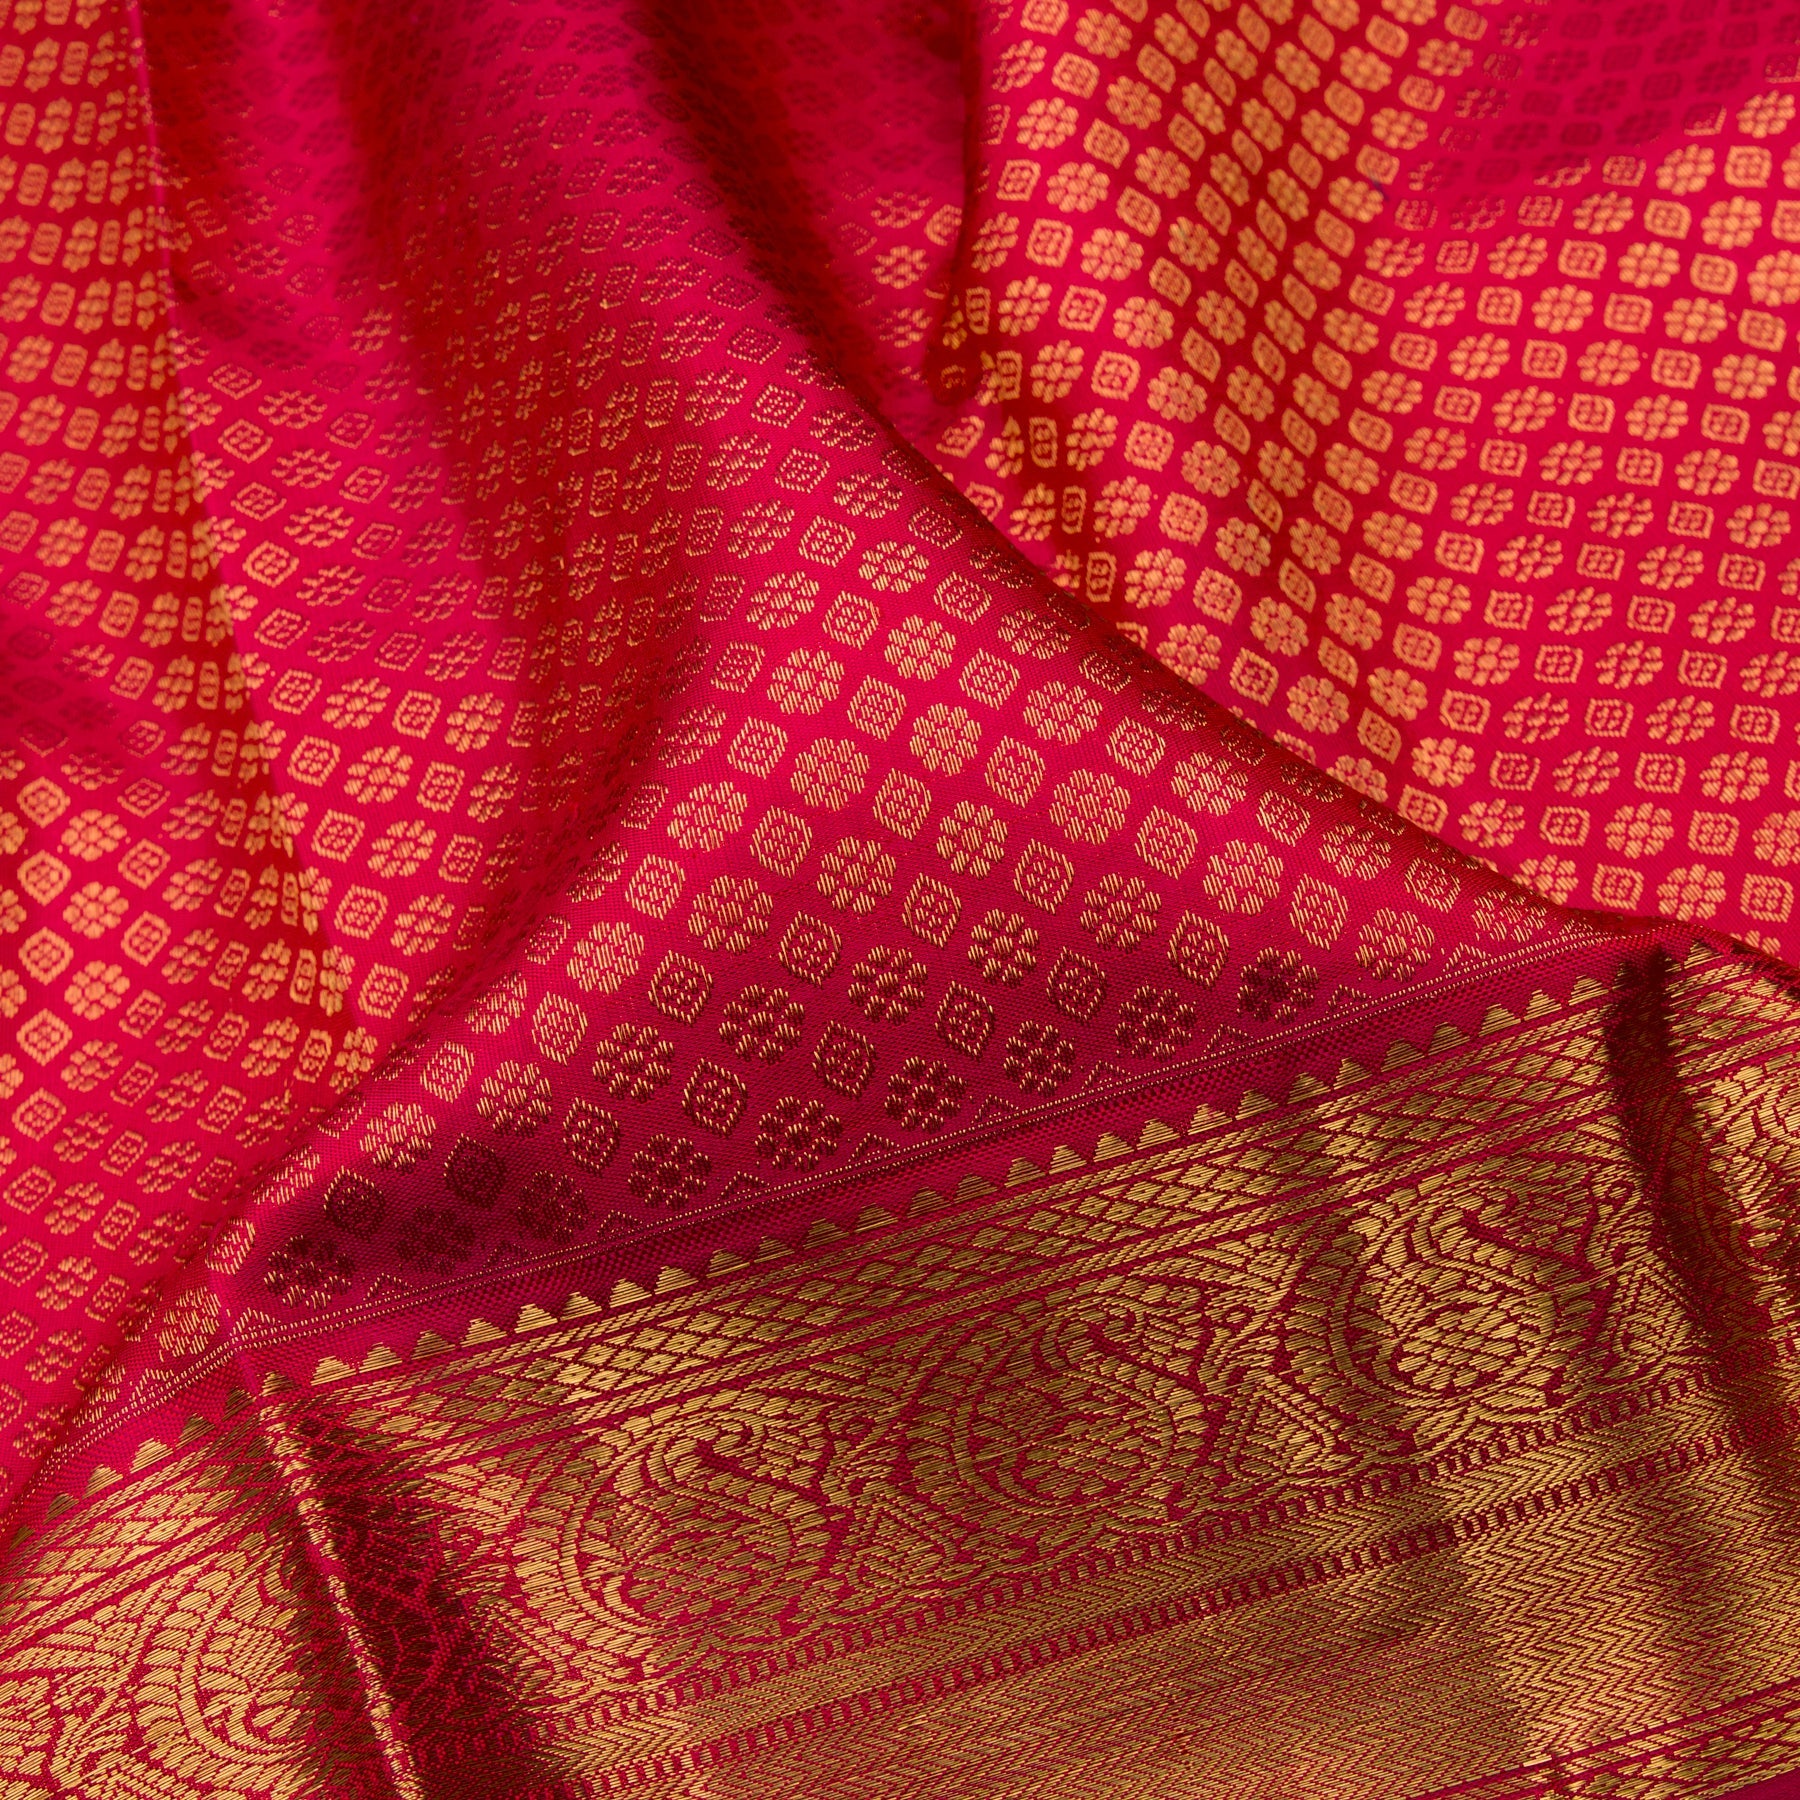 Kanakavalli Kanjivaram Silk Sari 23-110-HS001-00989 - Fabric View